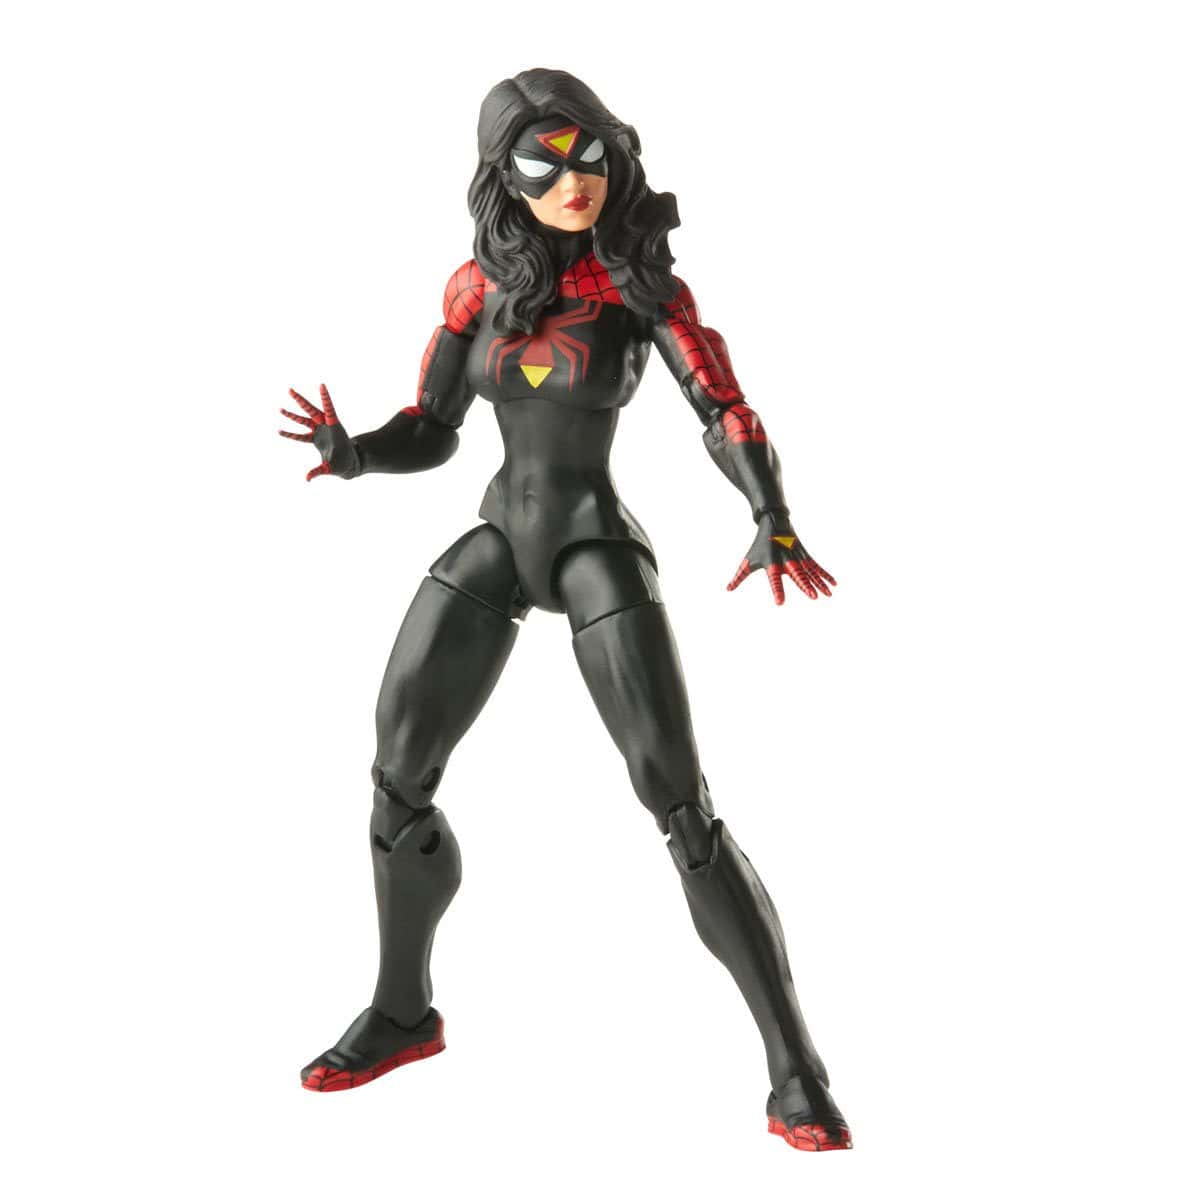 Spider-Man Retro Marvel Legends Jessica Drew Spider-Woman 6-Inch Action Figure.